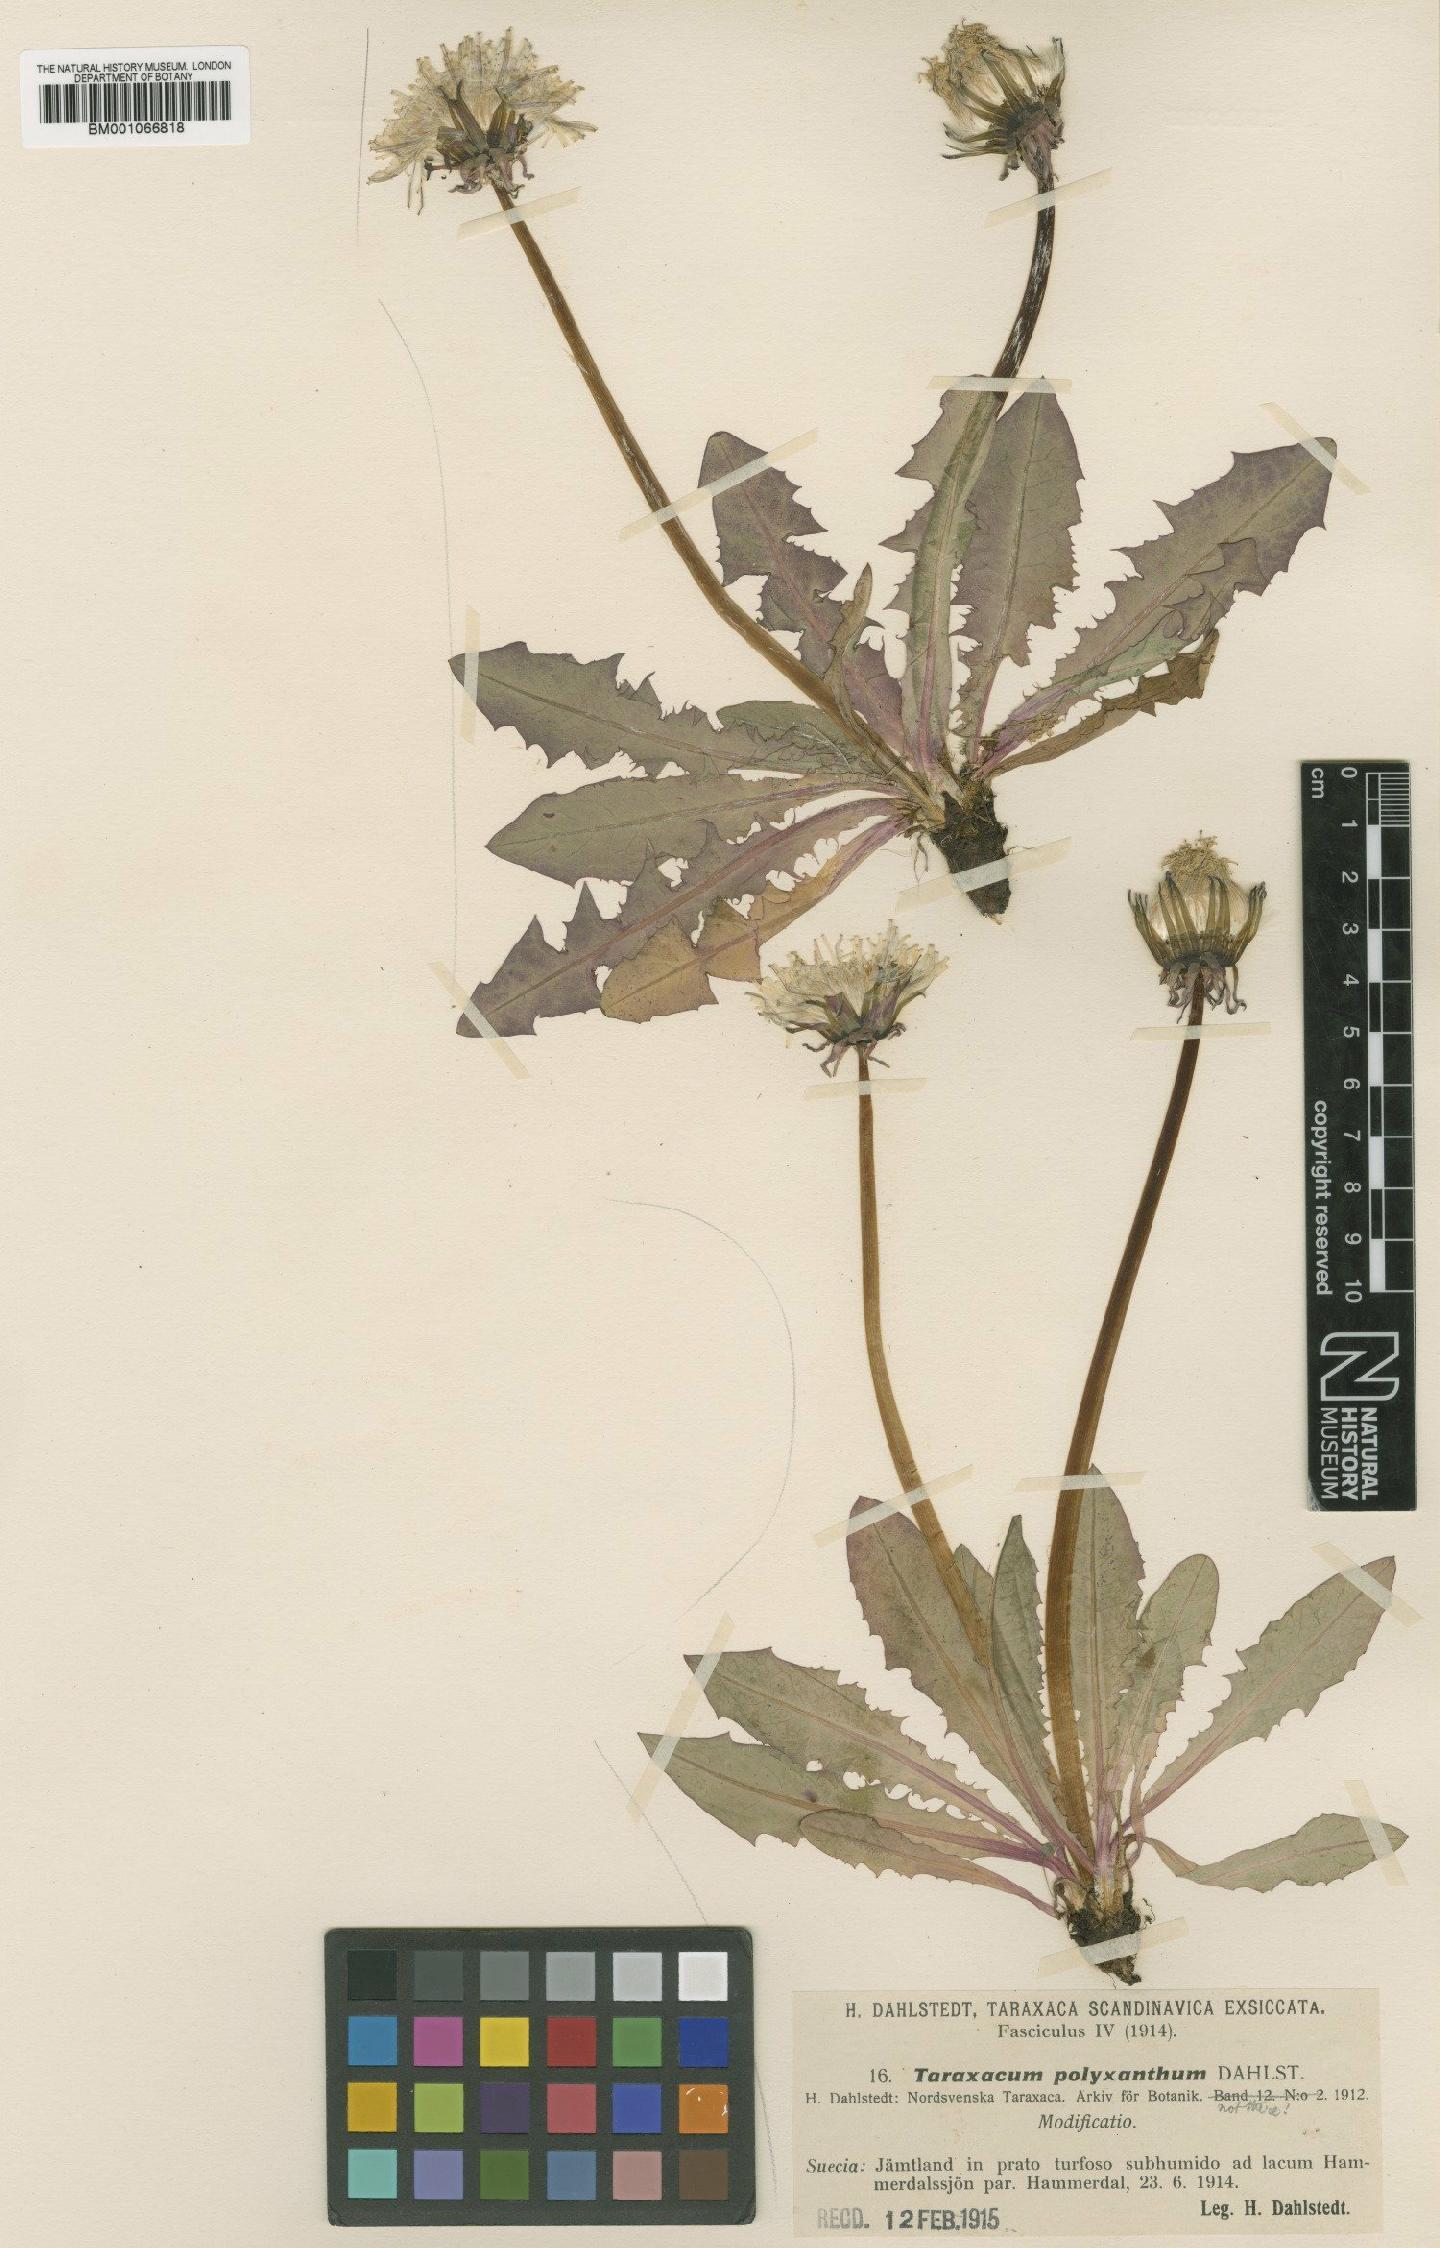 To NHMUK collection (Taraxacum polyxanthum Dahlst.; TYPE; NHMUK:ecatalogue:2233473)